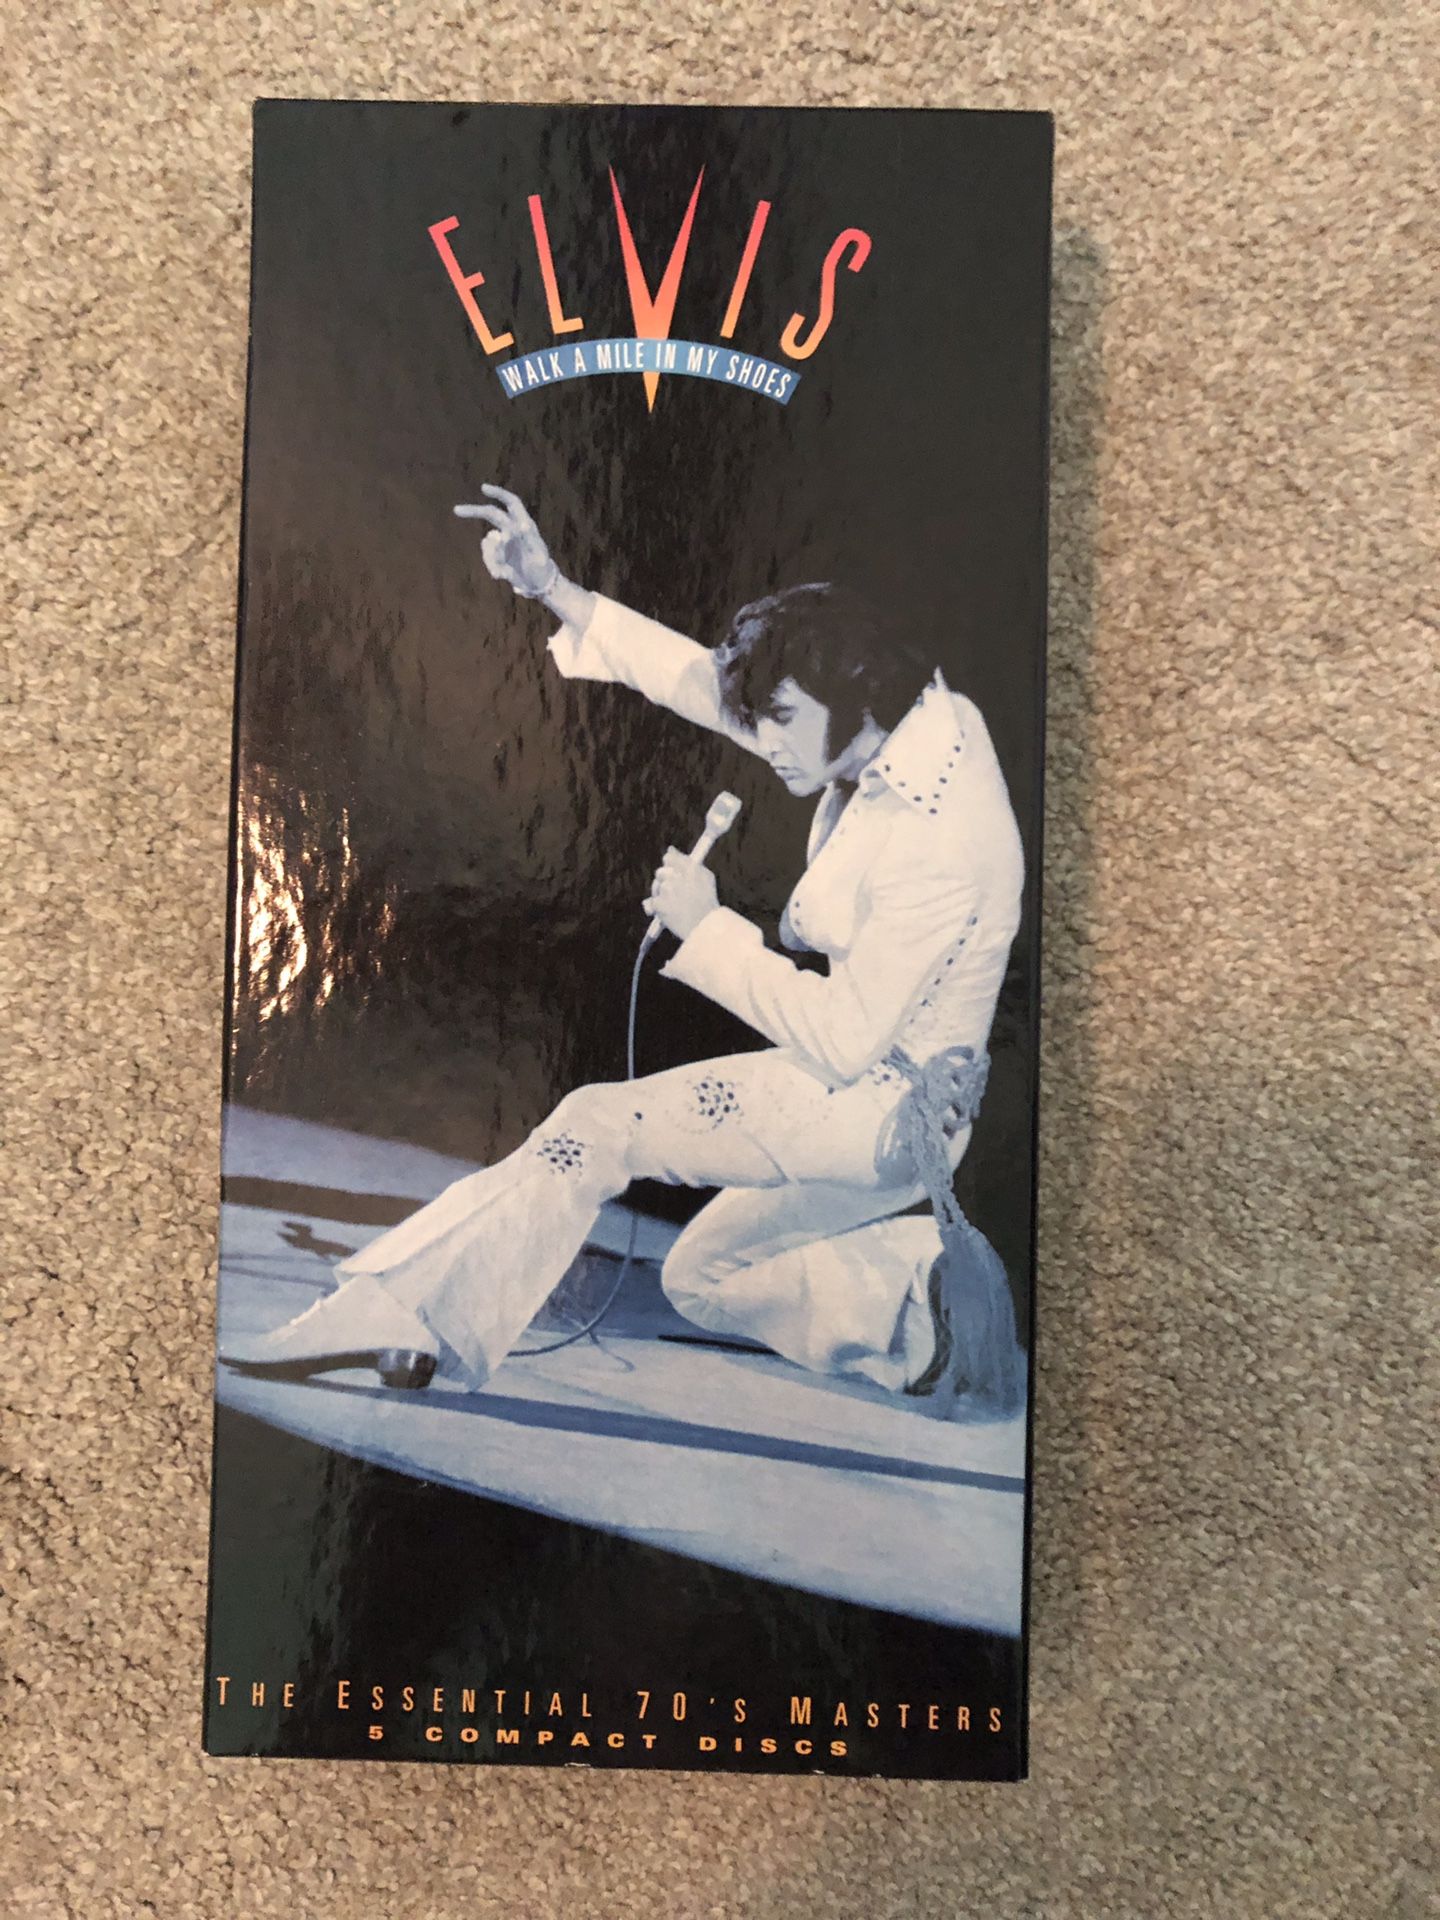 Elvis CDs